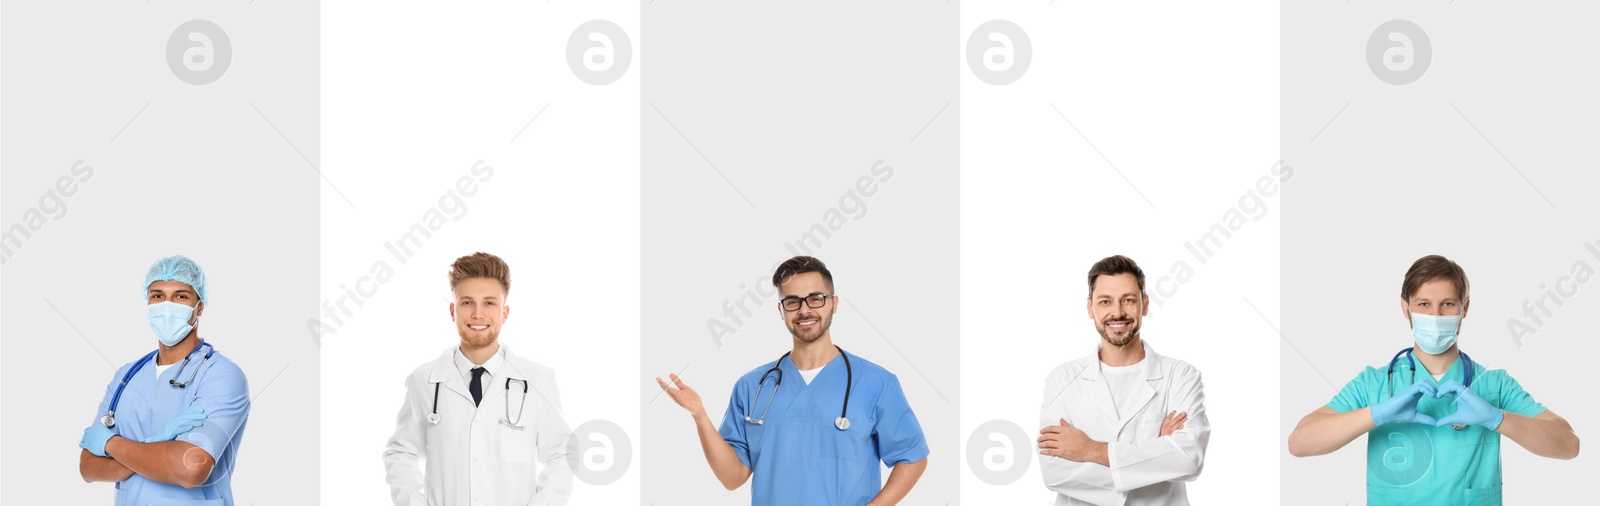 Image of Medical nurses on white background, set of photos